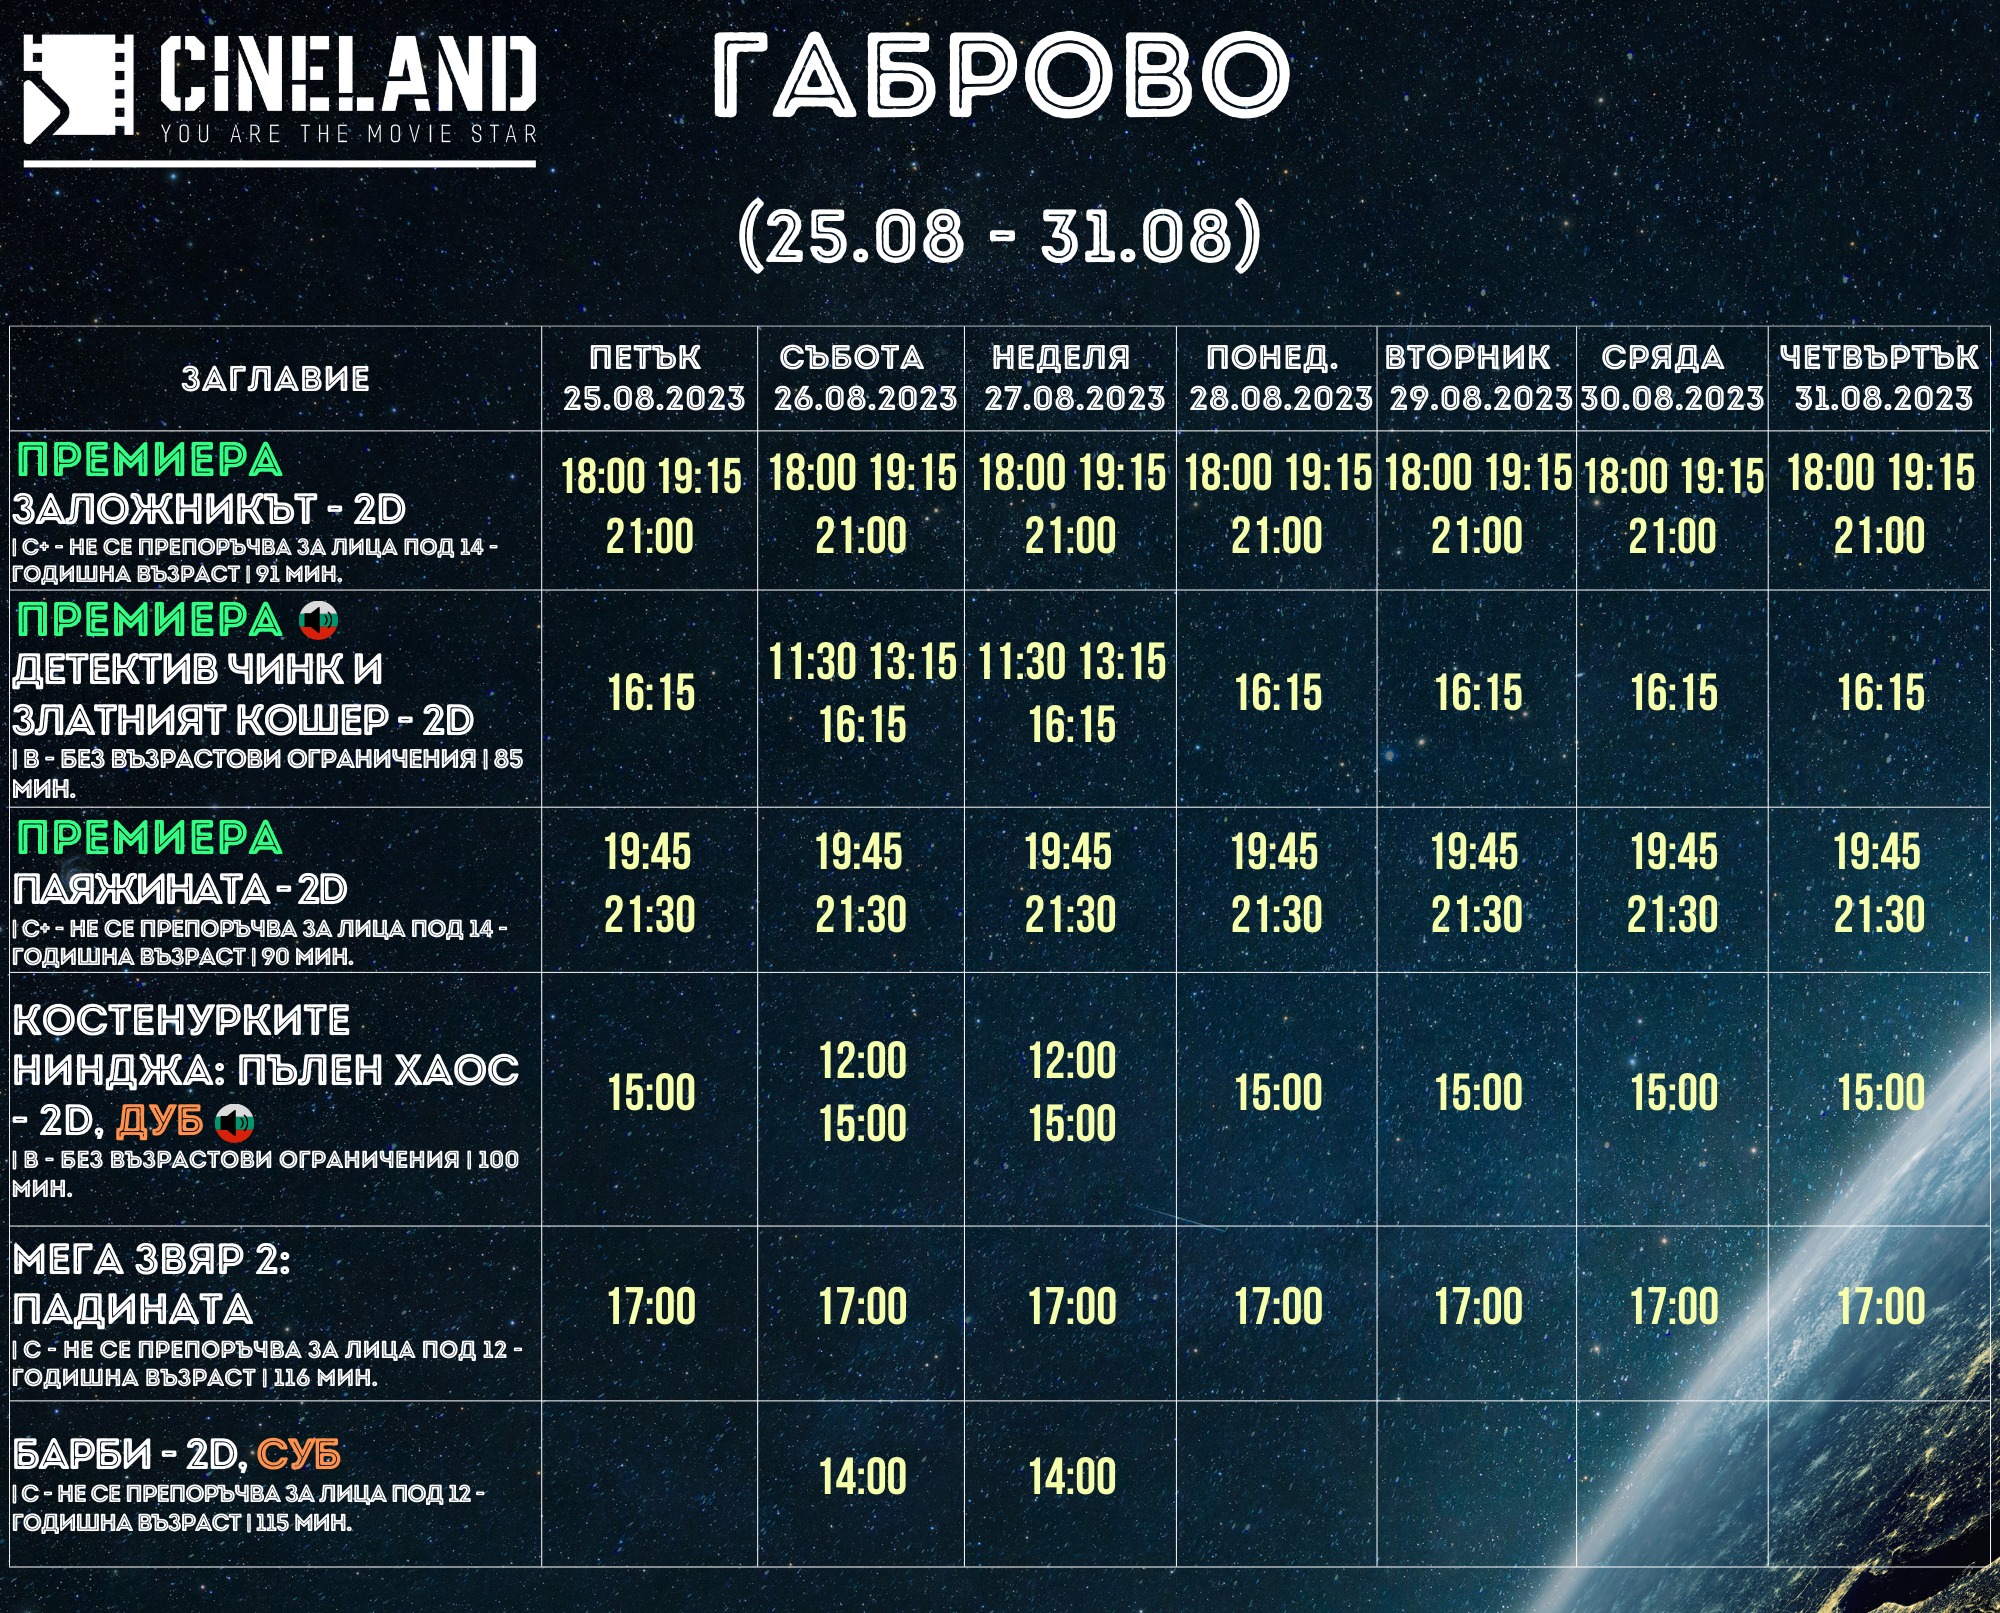 CineLand :      25-31.08.2023